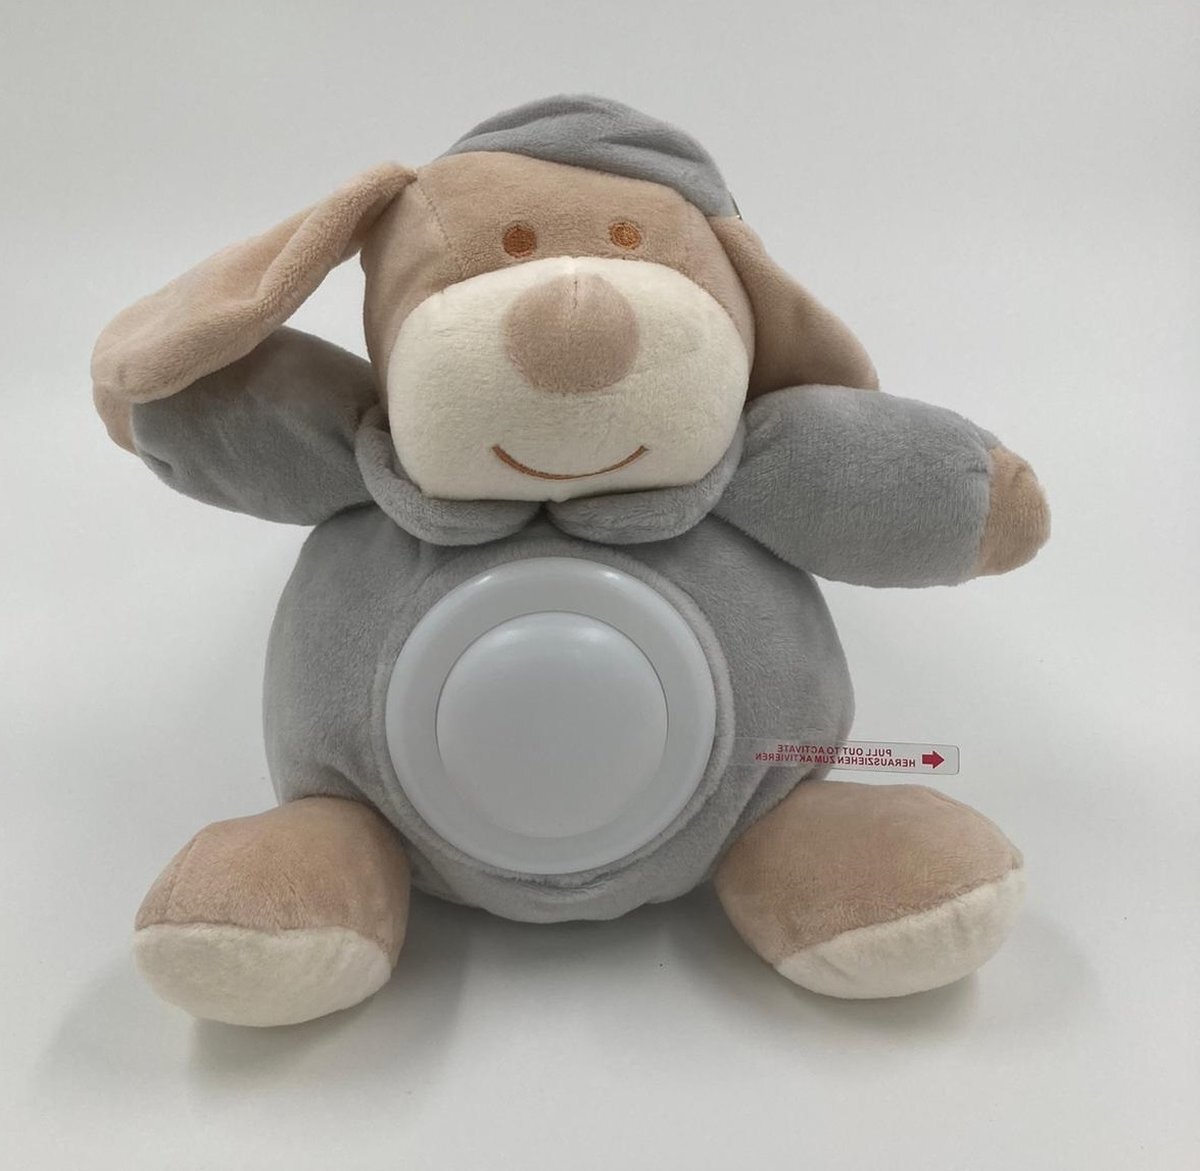 Winfried Kögler GmbH - KF Baby knuffel GRIJS - model HOND met nachtlampje - voor kinderen - LED nachtlamp op batterij - meerdere kleuren knuffels verkrijgbaar – knuffelbeest met nachtlampje